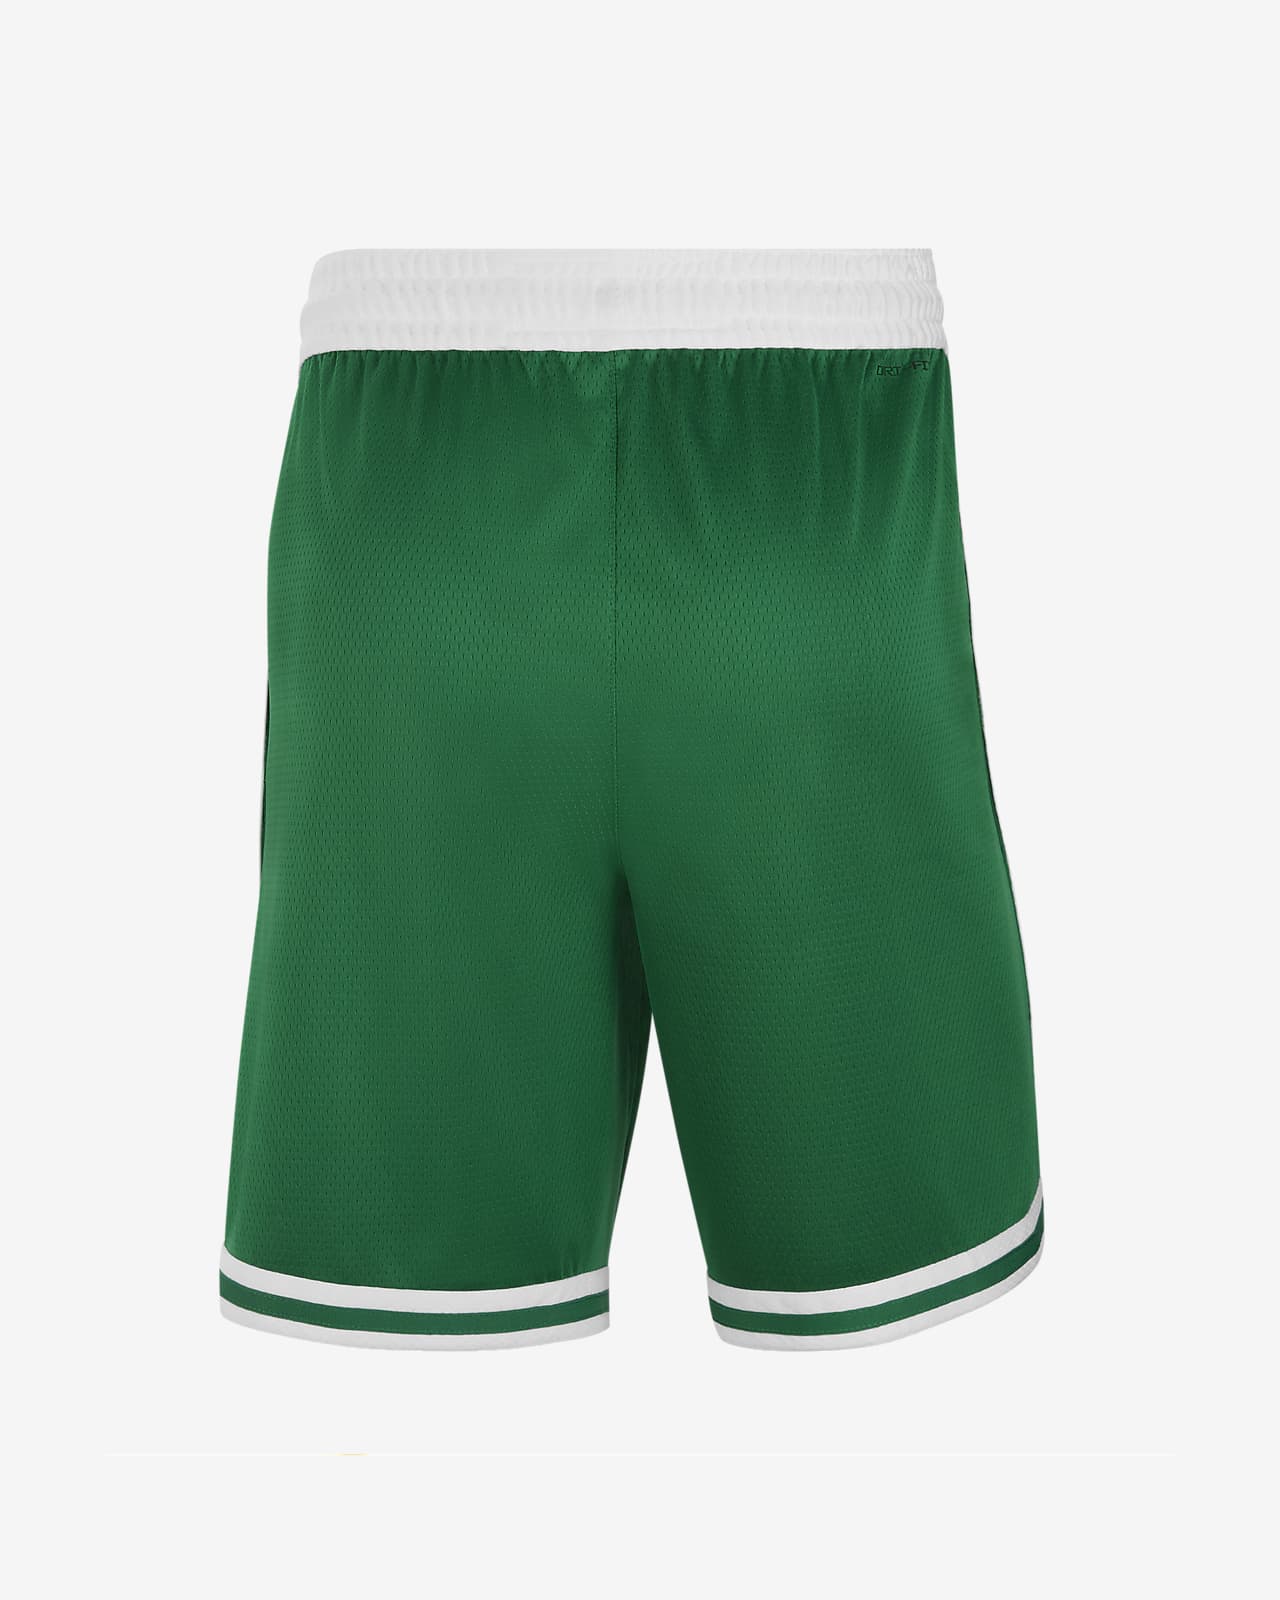 boston celtics shorts men